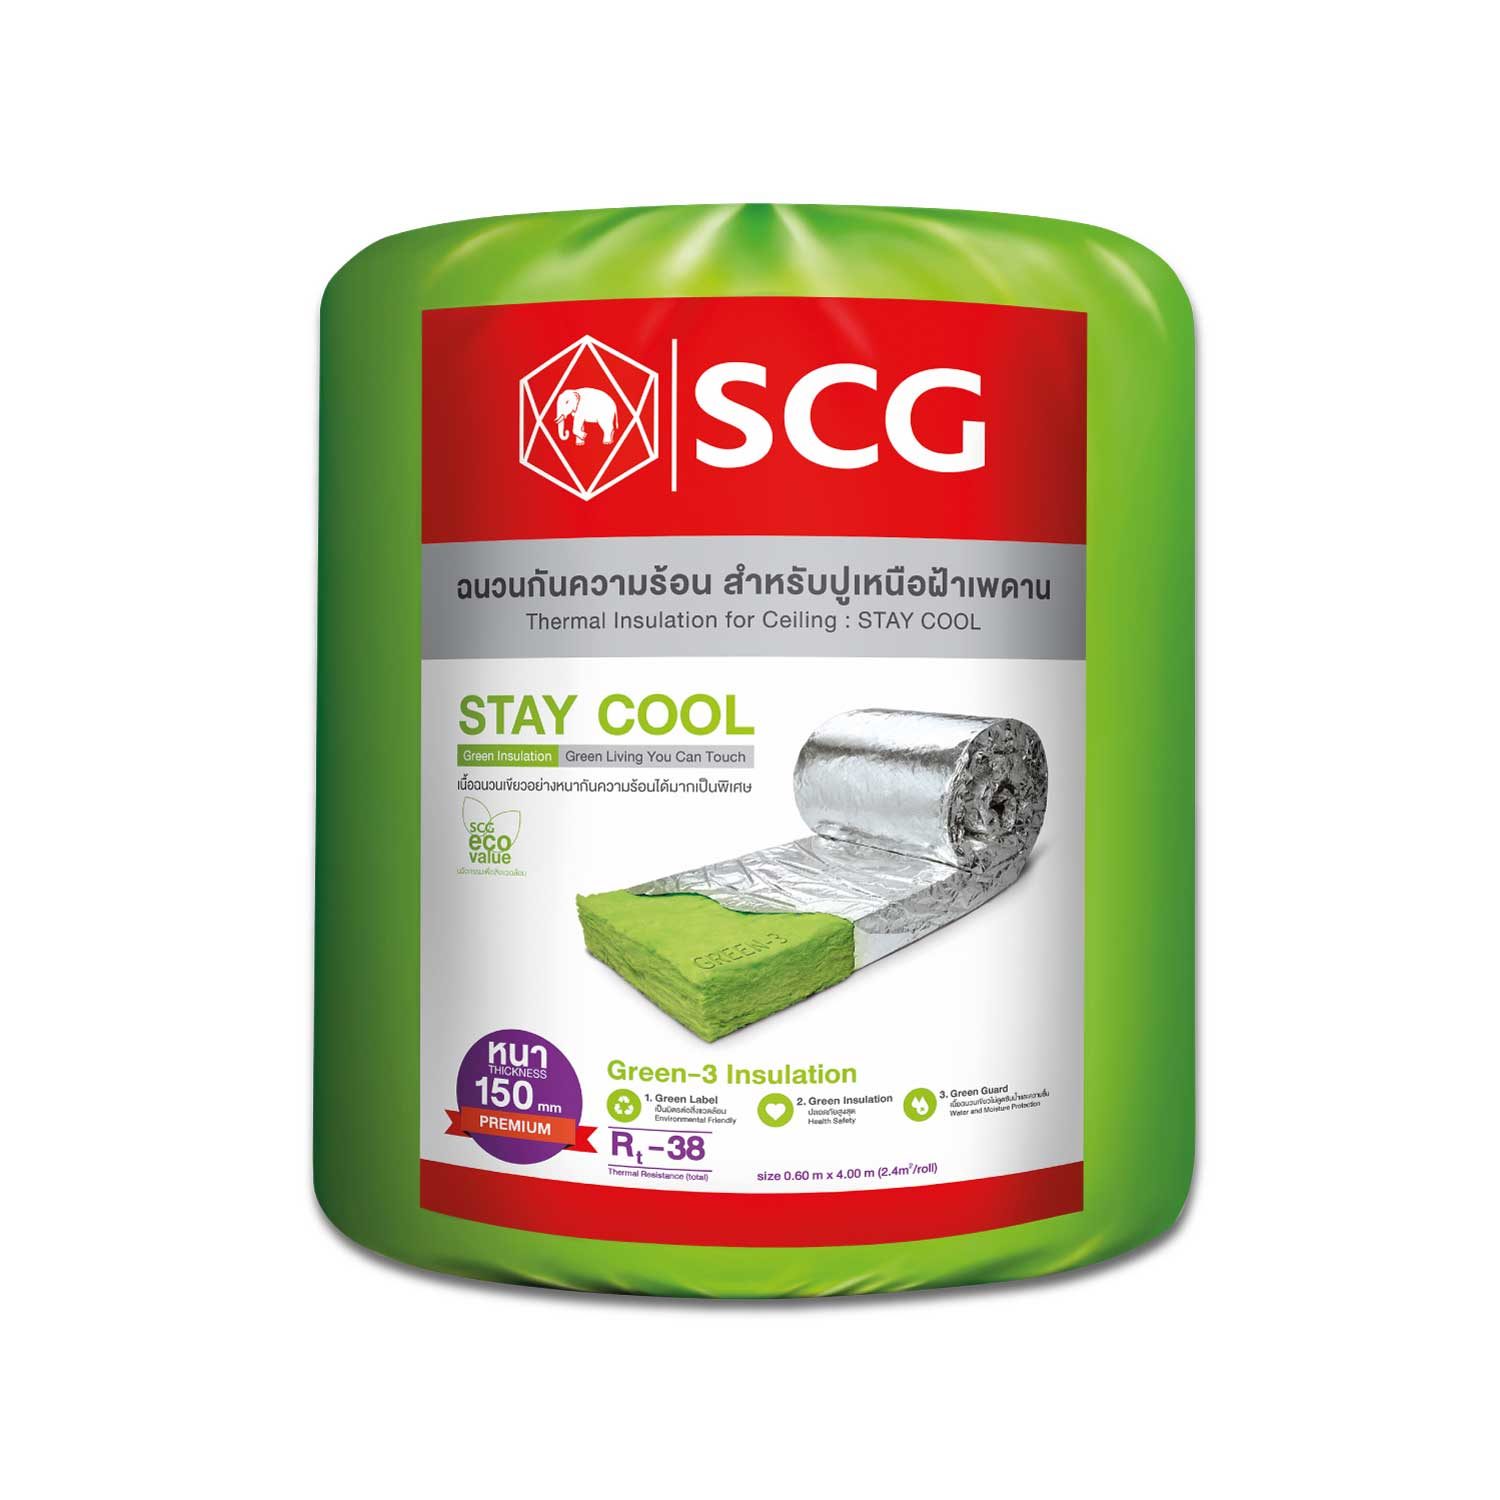 ฉนวนกันความร้อน SCG รุ่น STAY COOL หนา 150 มม. (6 นิ้ว)